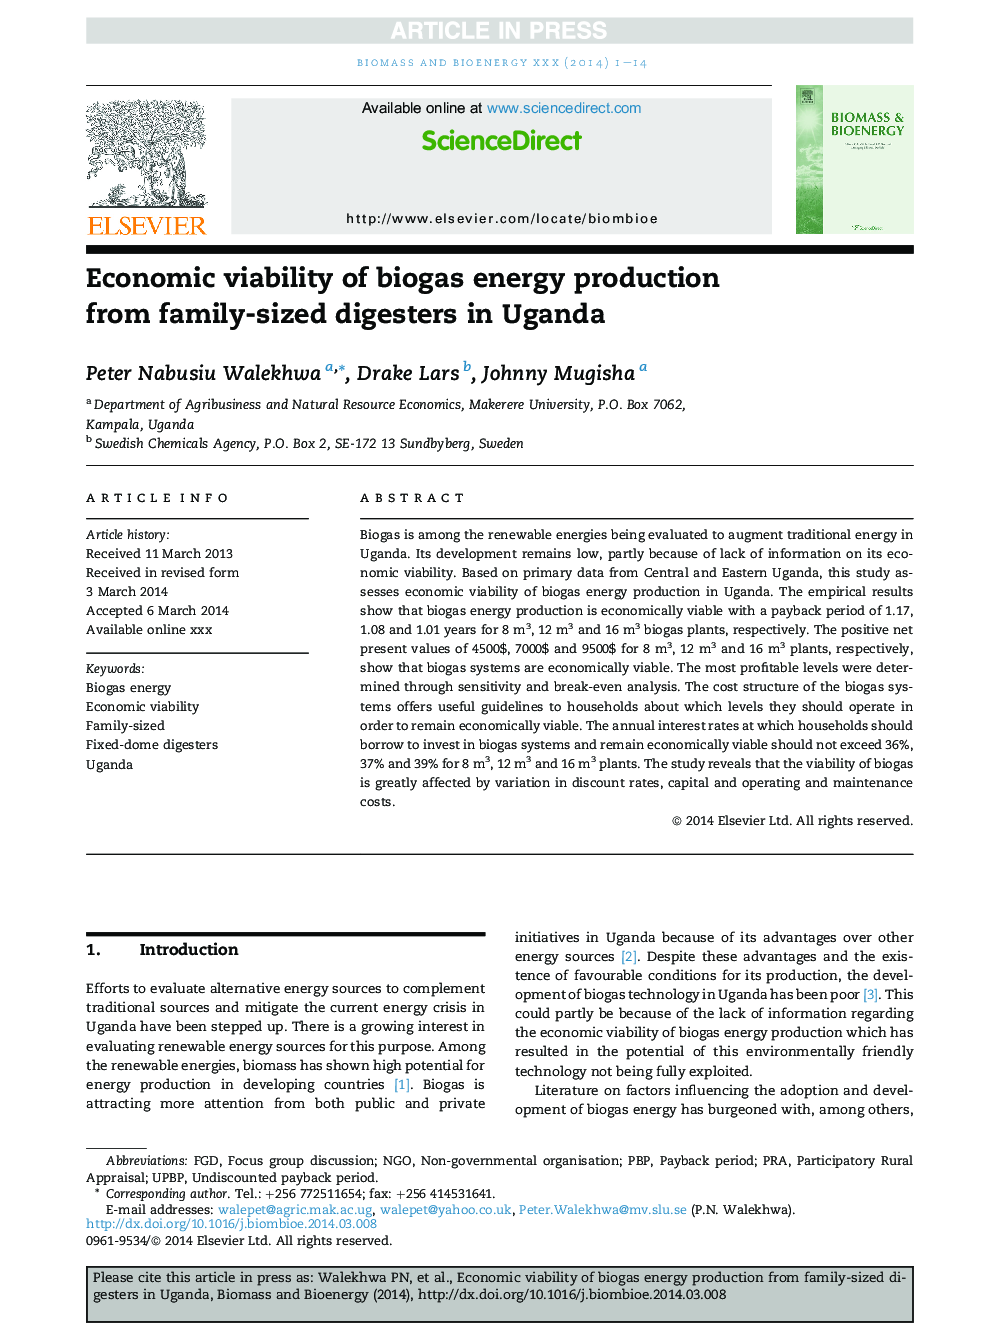 پایداری اقتصادی تولید انرژی بیوگاز از گیاهان با اندازه خانواده در اوگاندا 